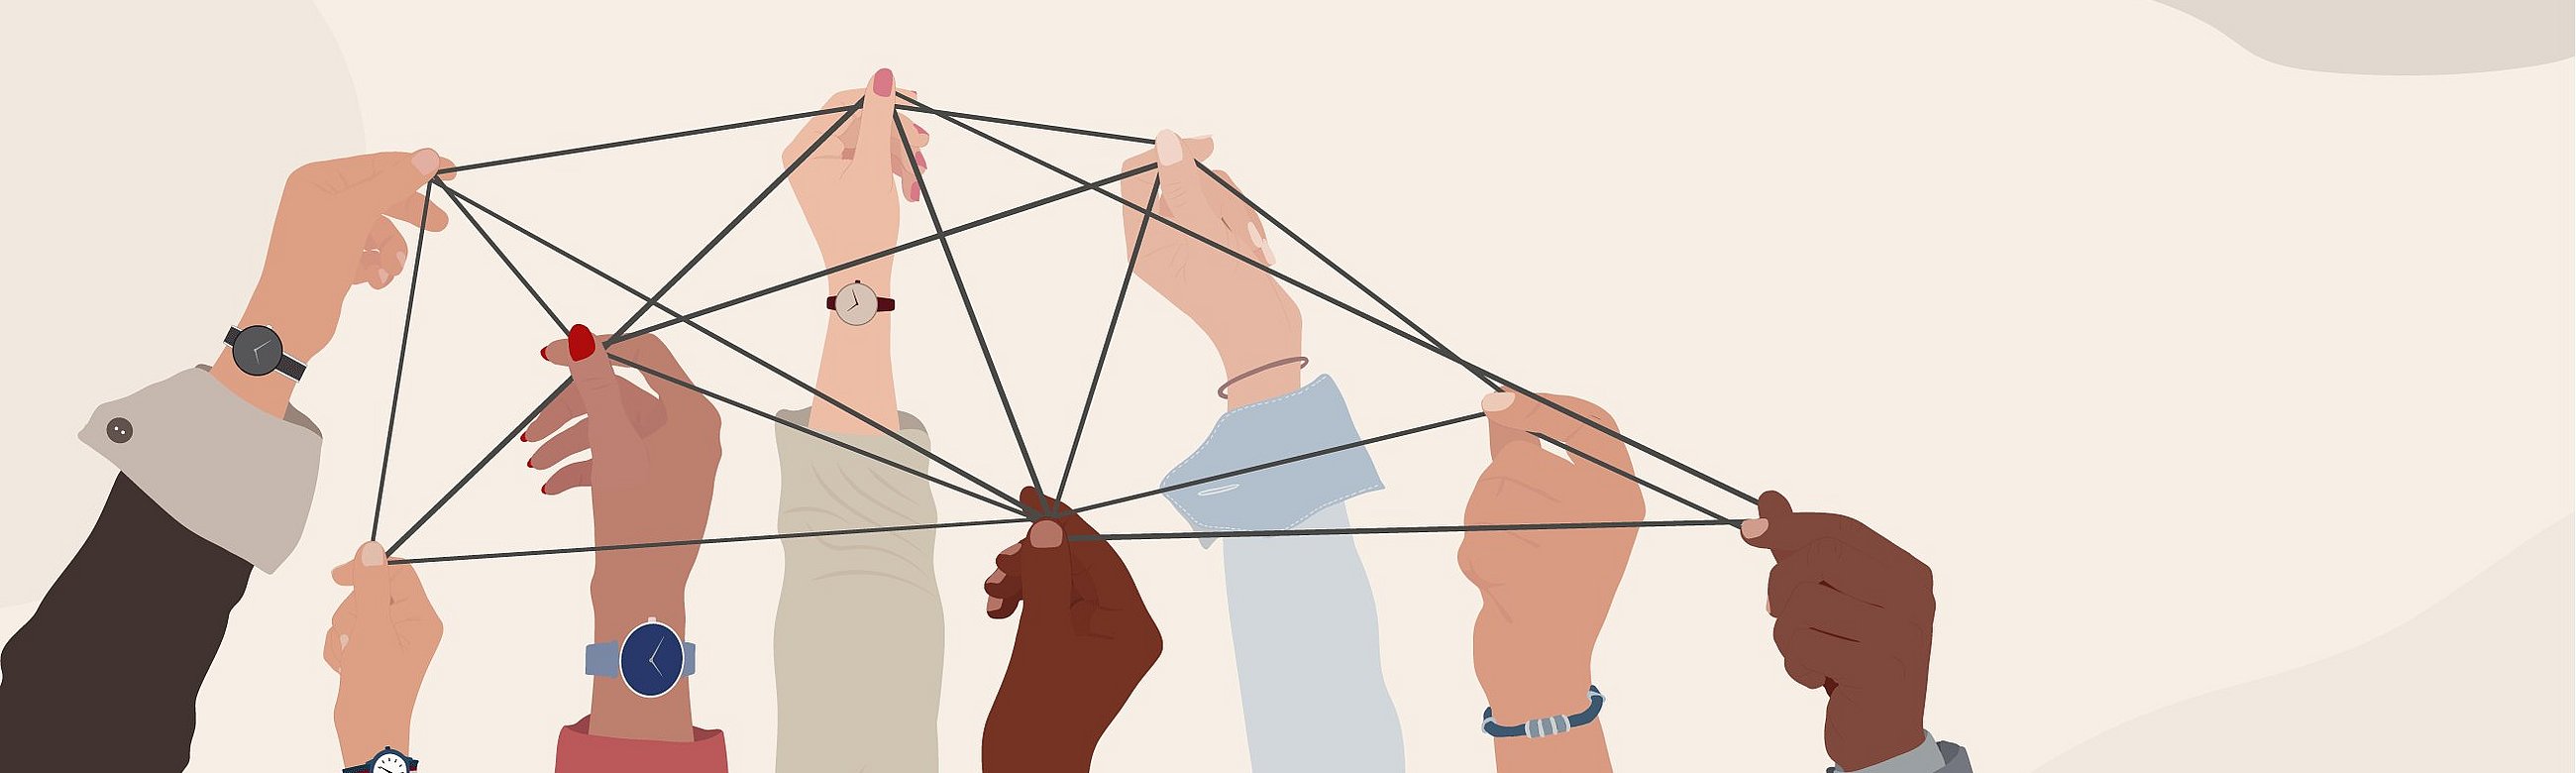 Illustration von Händen, die ein Netz spannen